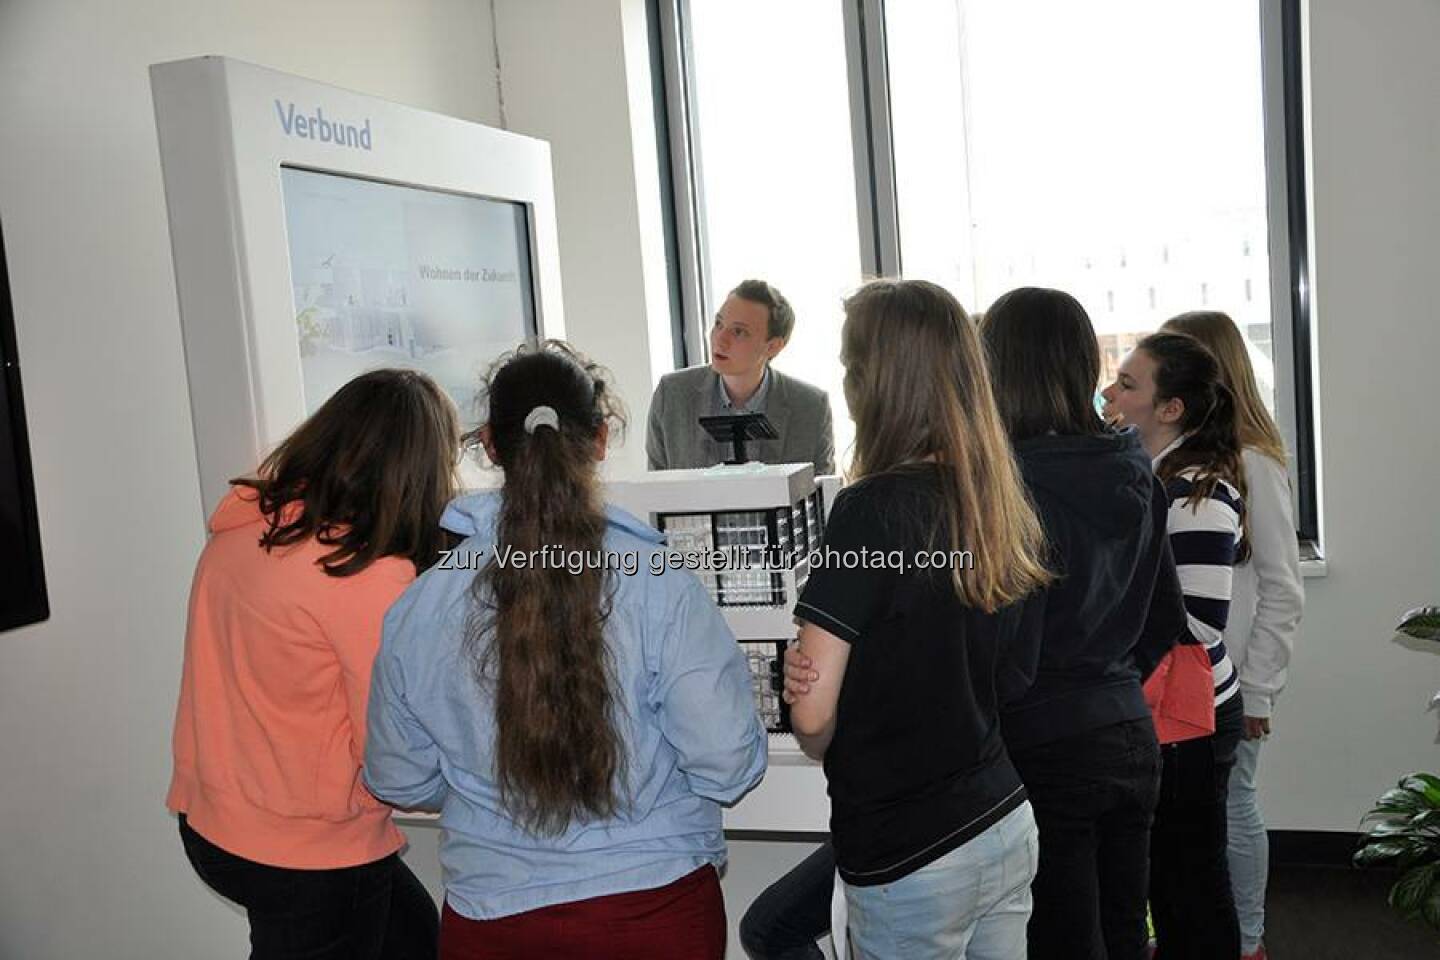 Auch VERBUND nahm am diesjährigen Wiener Töchtertag teil und bot 12 Mädchen die Chance die technische Berufswelt bei VERBUND kennen zu lernen. Einen ausführlichen Bericht findet ihr in unserem aktuellen Blogbeitrag: http://to.verbund.com/1mXsO9H  Source: http://facebook.com/verbund